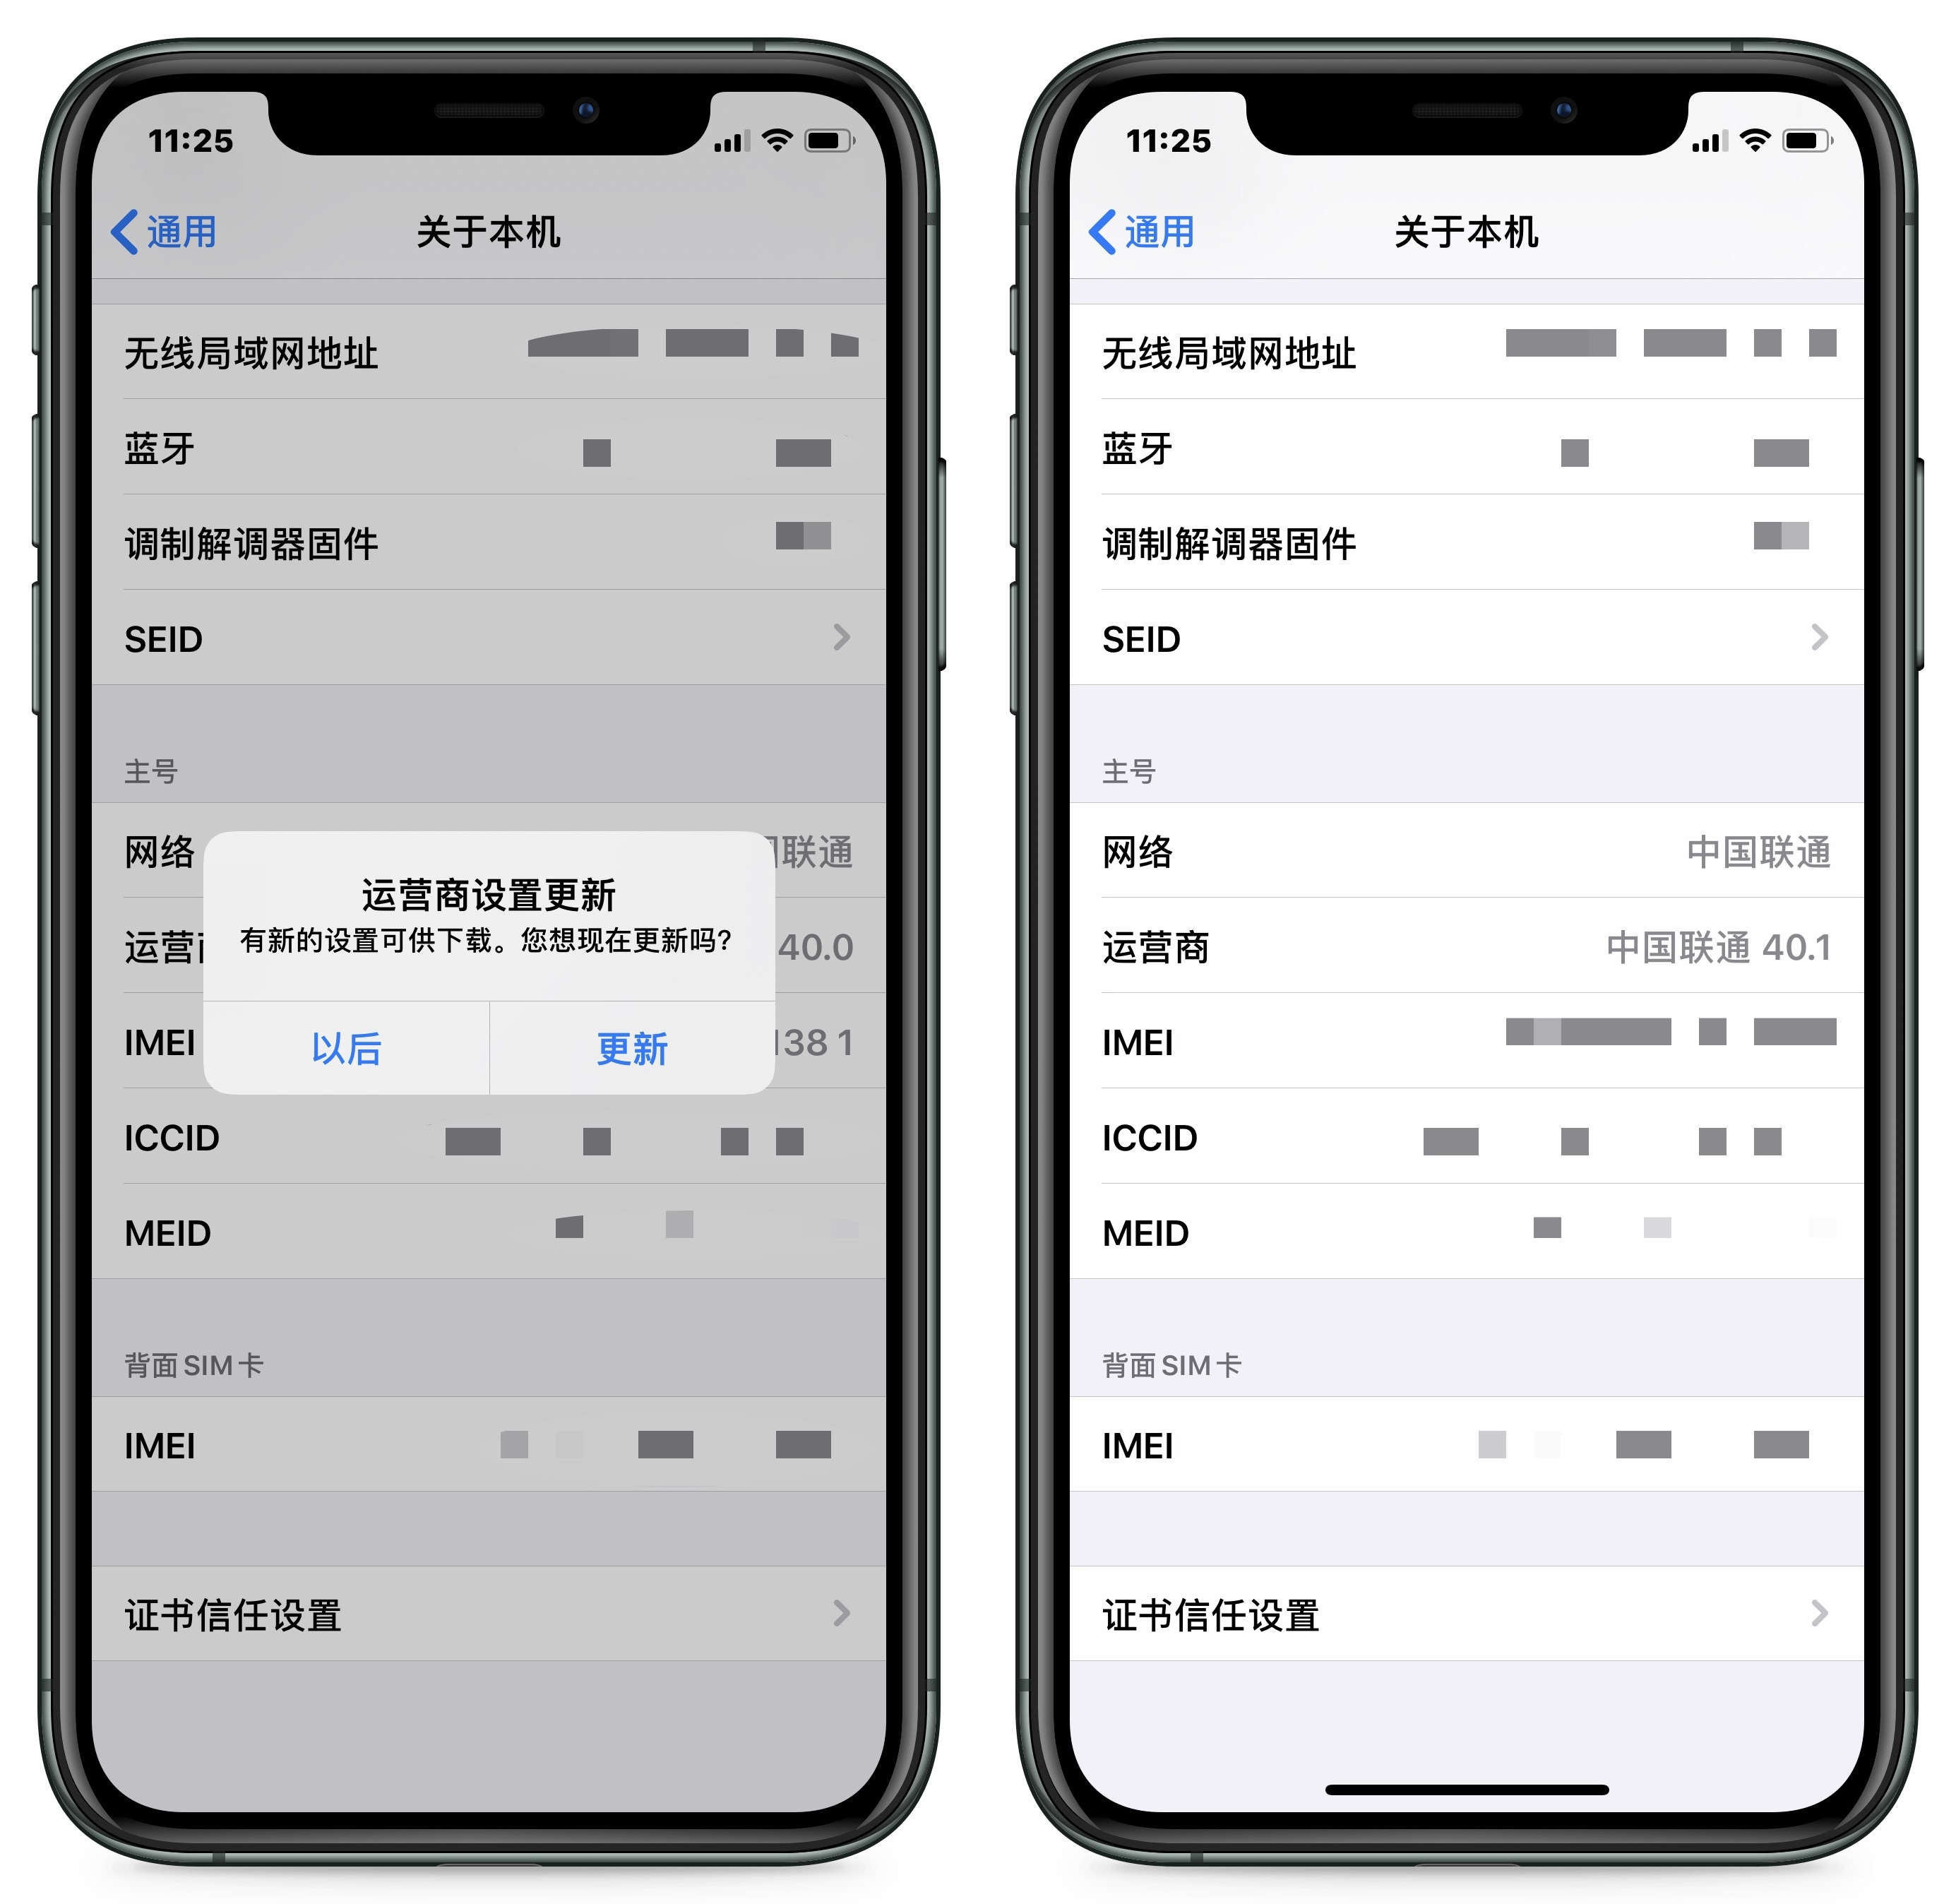 中国联通用户如何在iPhone上体验VoLTE功能？[墙根网]